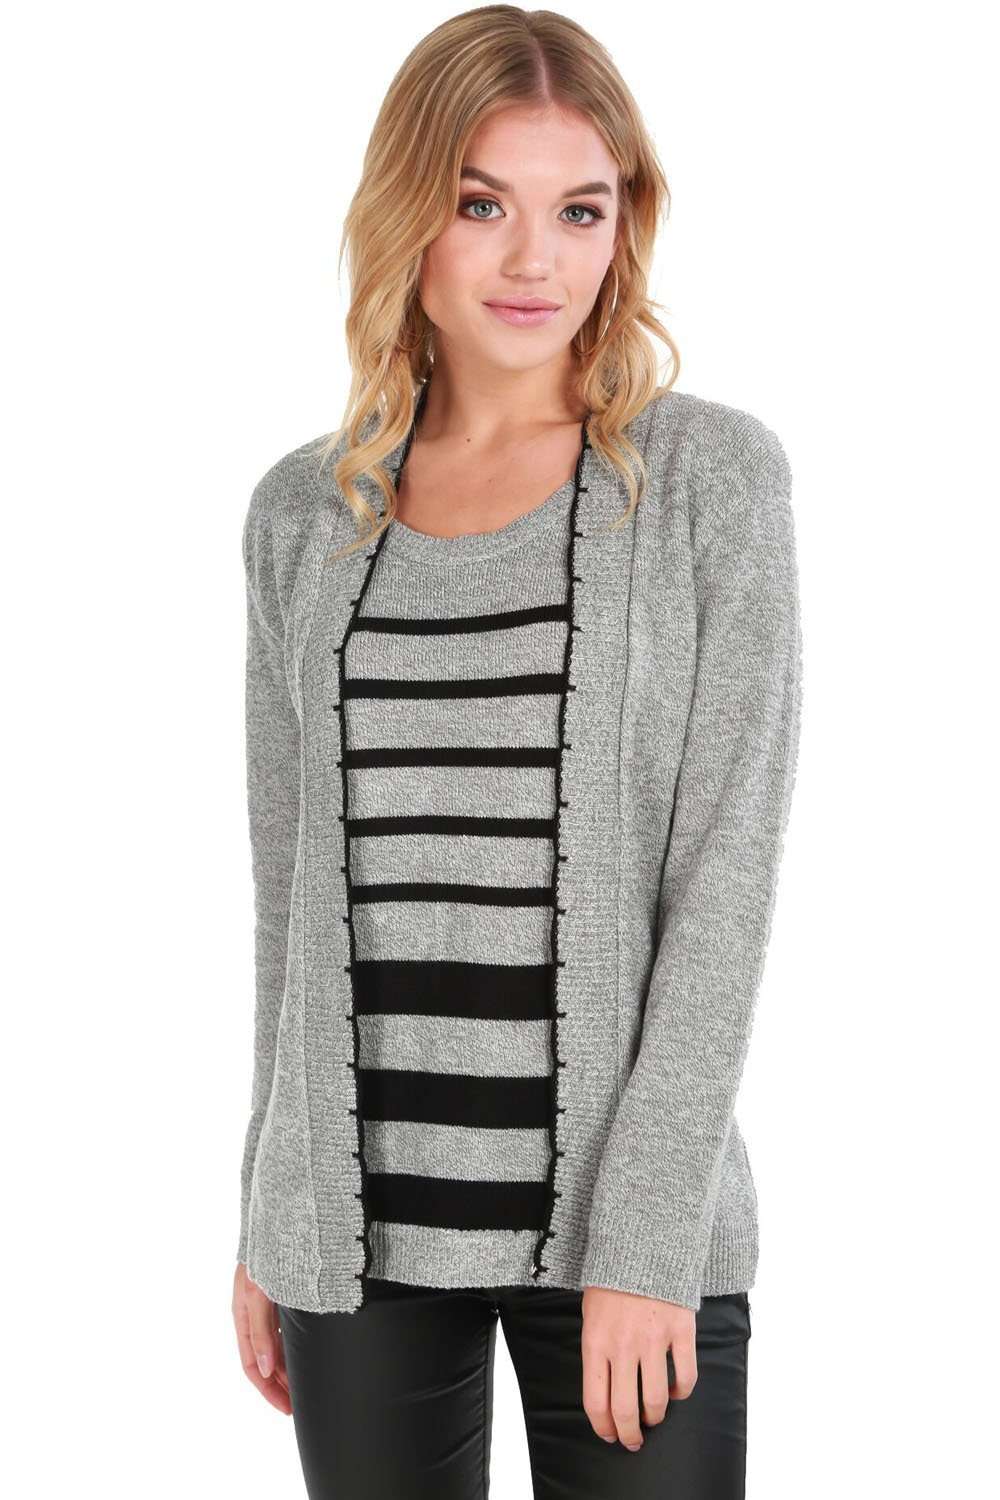 Heidi Long Sleeve Striped Knitted Twin Jumper - bejealous-com